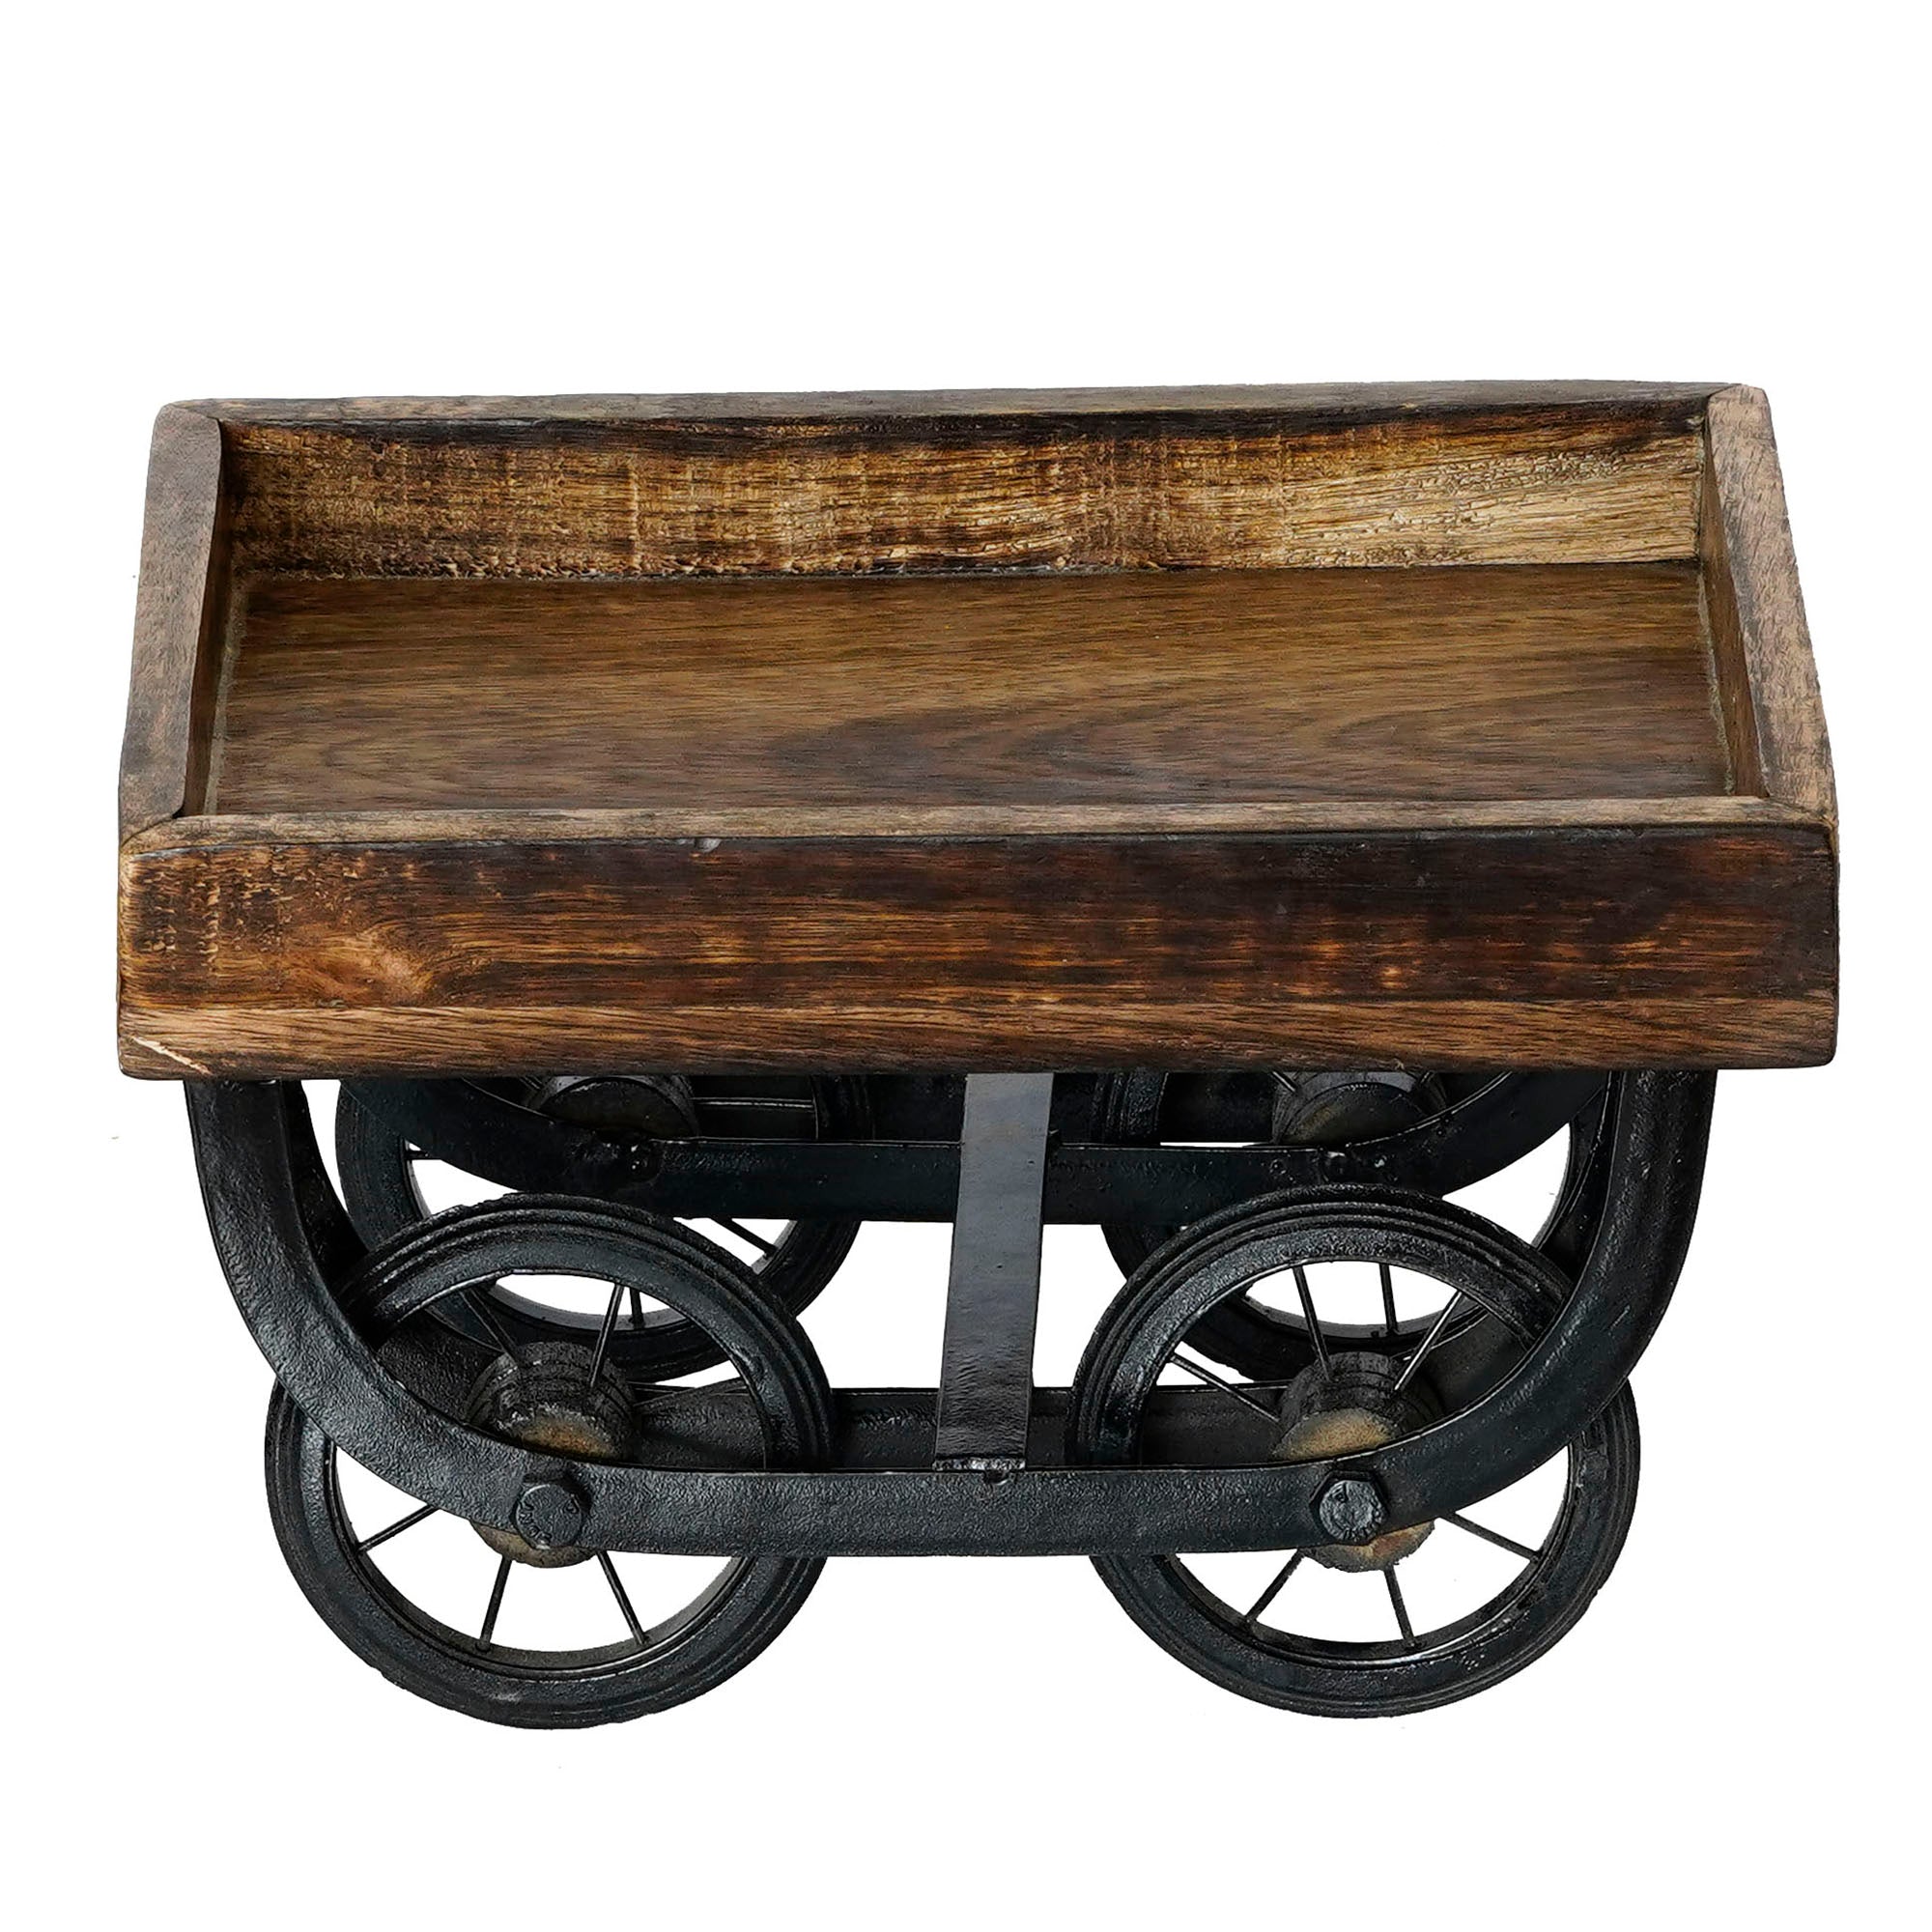 Wooden Cart Style Starter Serving Platter 5